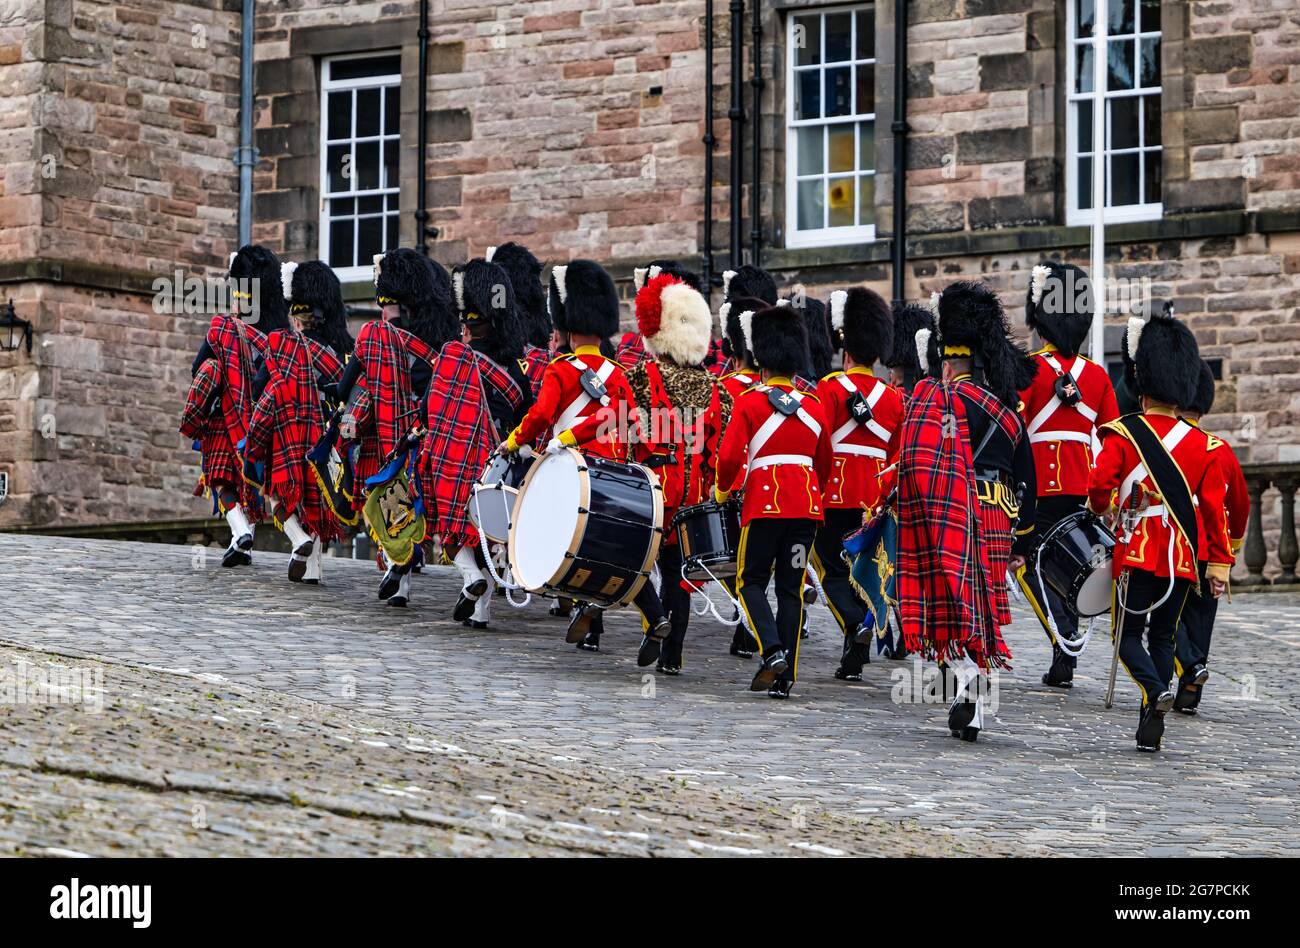 Royal Scots Guards Schottische Regimentsgruppe mit Dudelsack und Trommeln in Kilt-Uniformen marschieren vor Edinburgh Castle, Schottland, Großbritannien Stockfoto